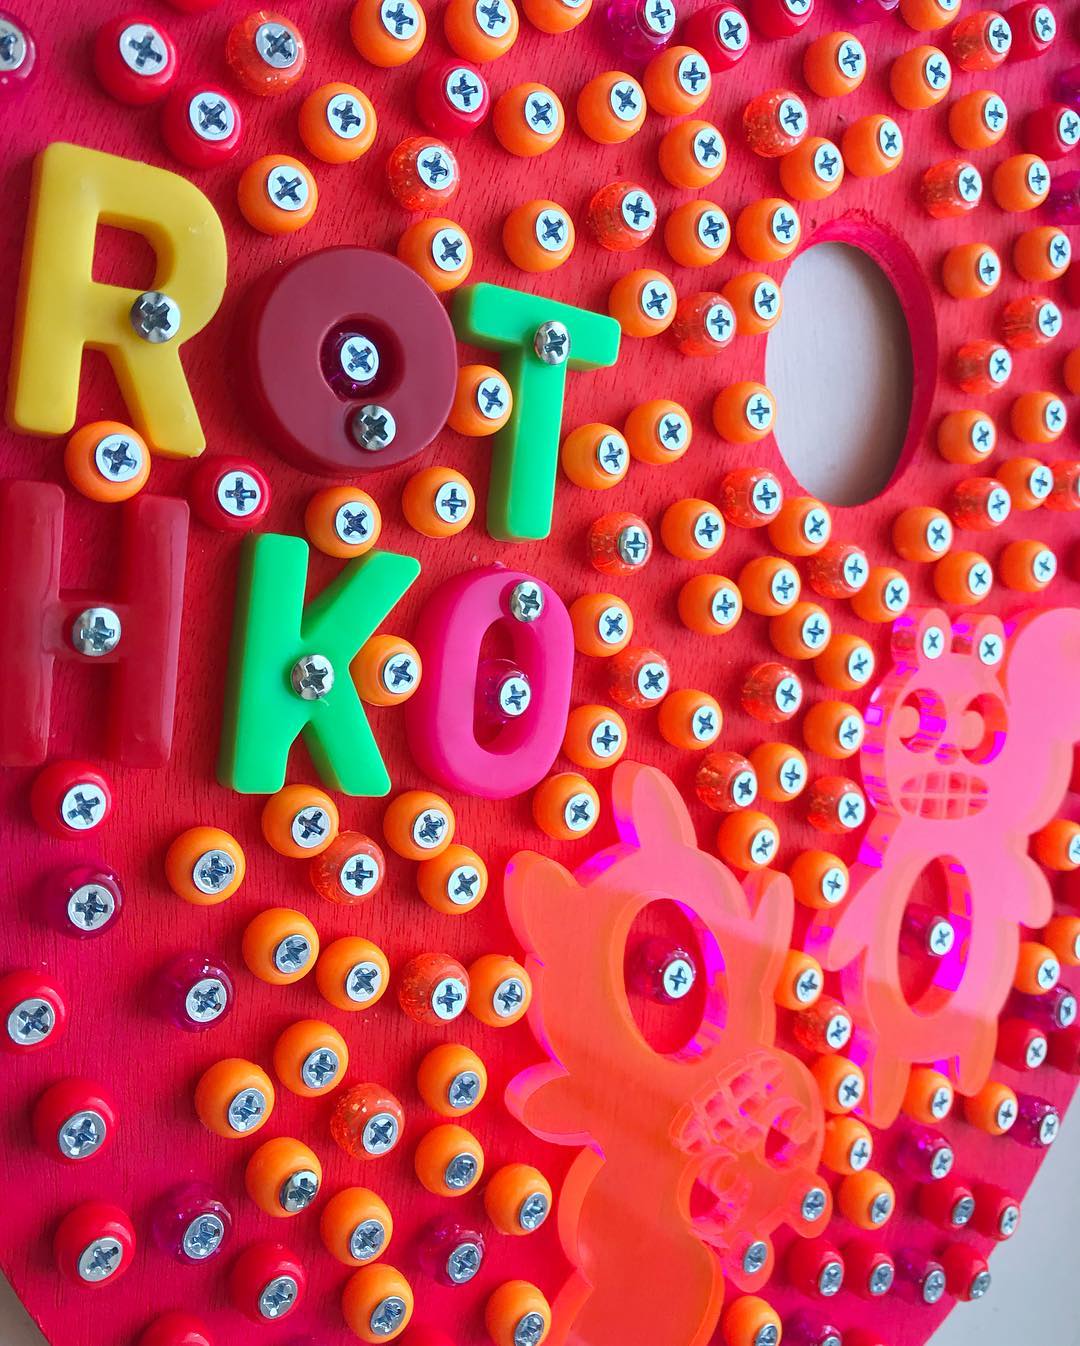 “Rothko” ©2019 invitational art show at Mark Rothko’s former studio, 222 Bowery, NYC